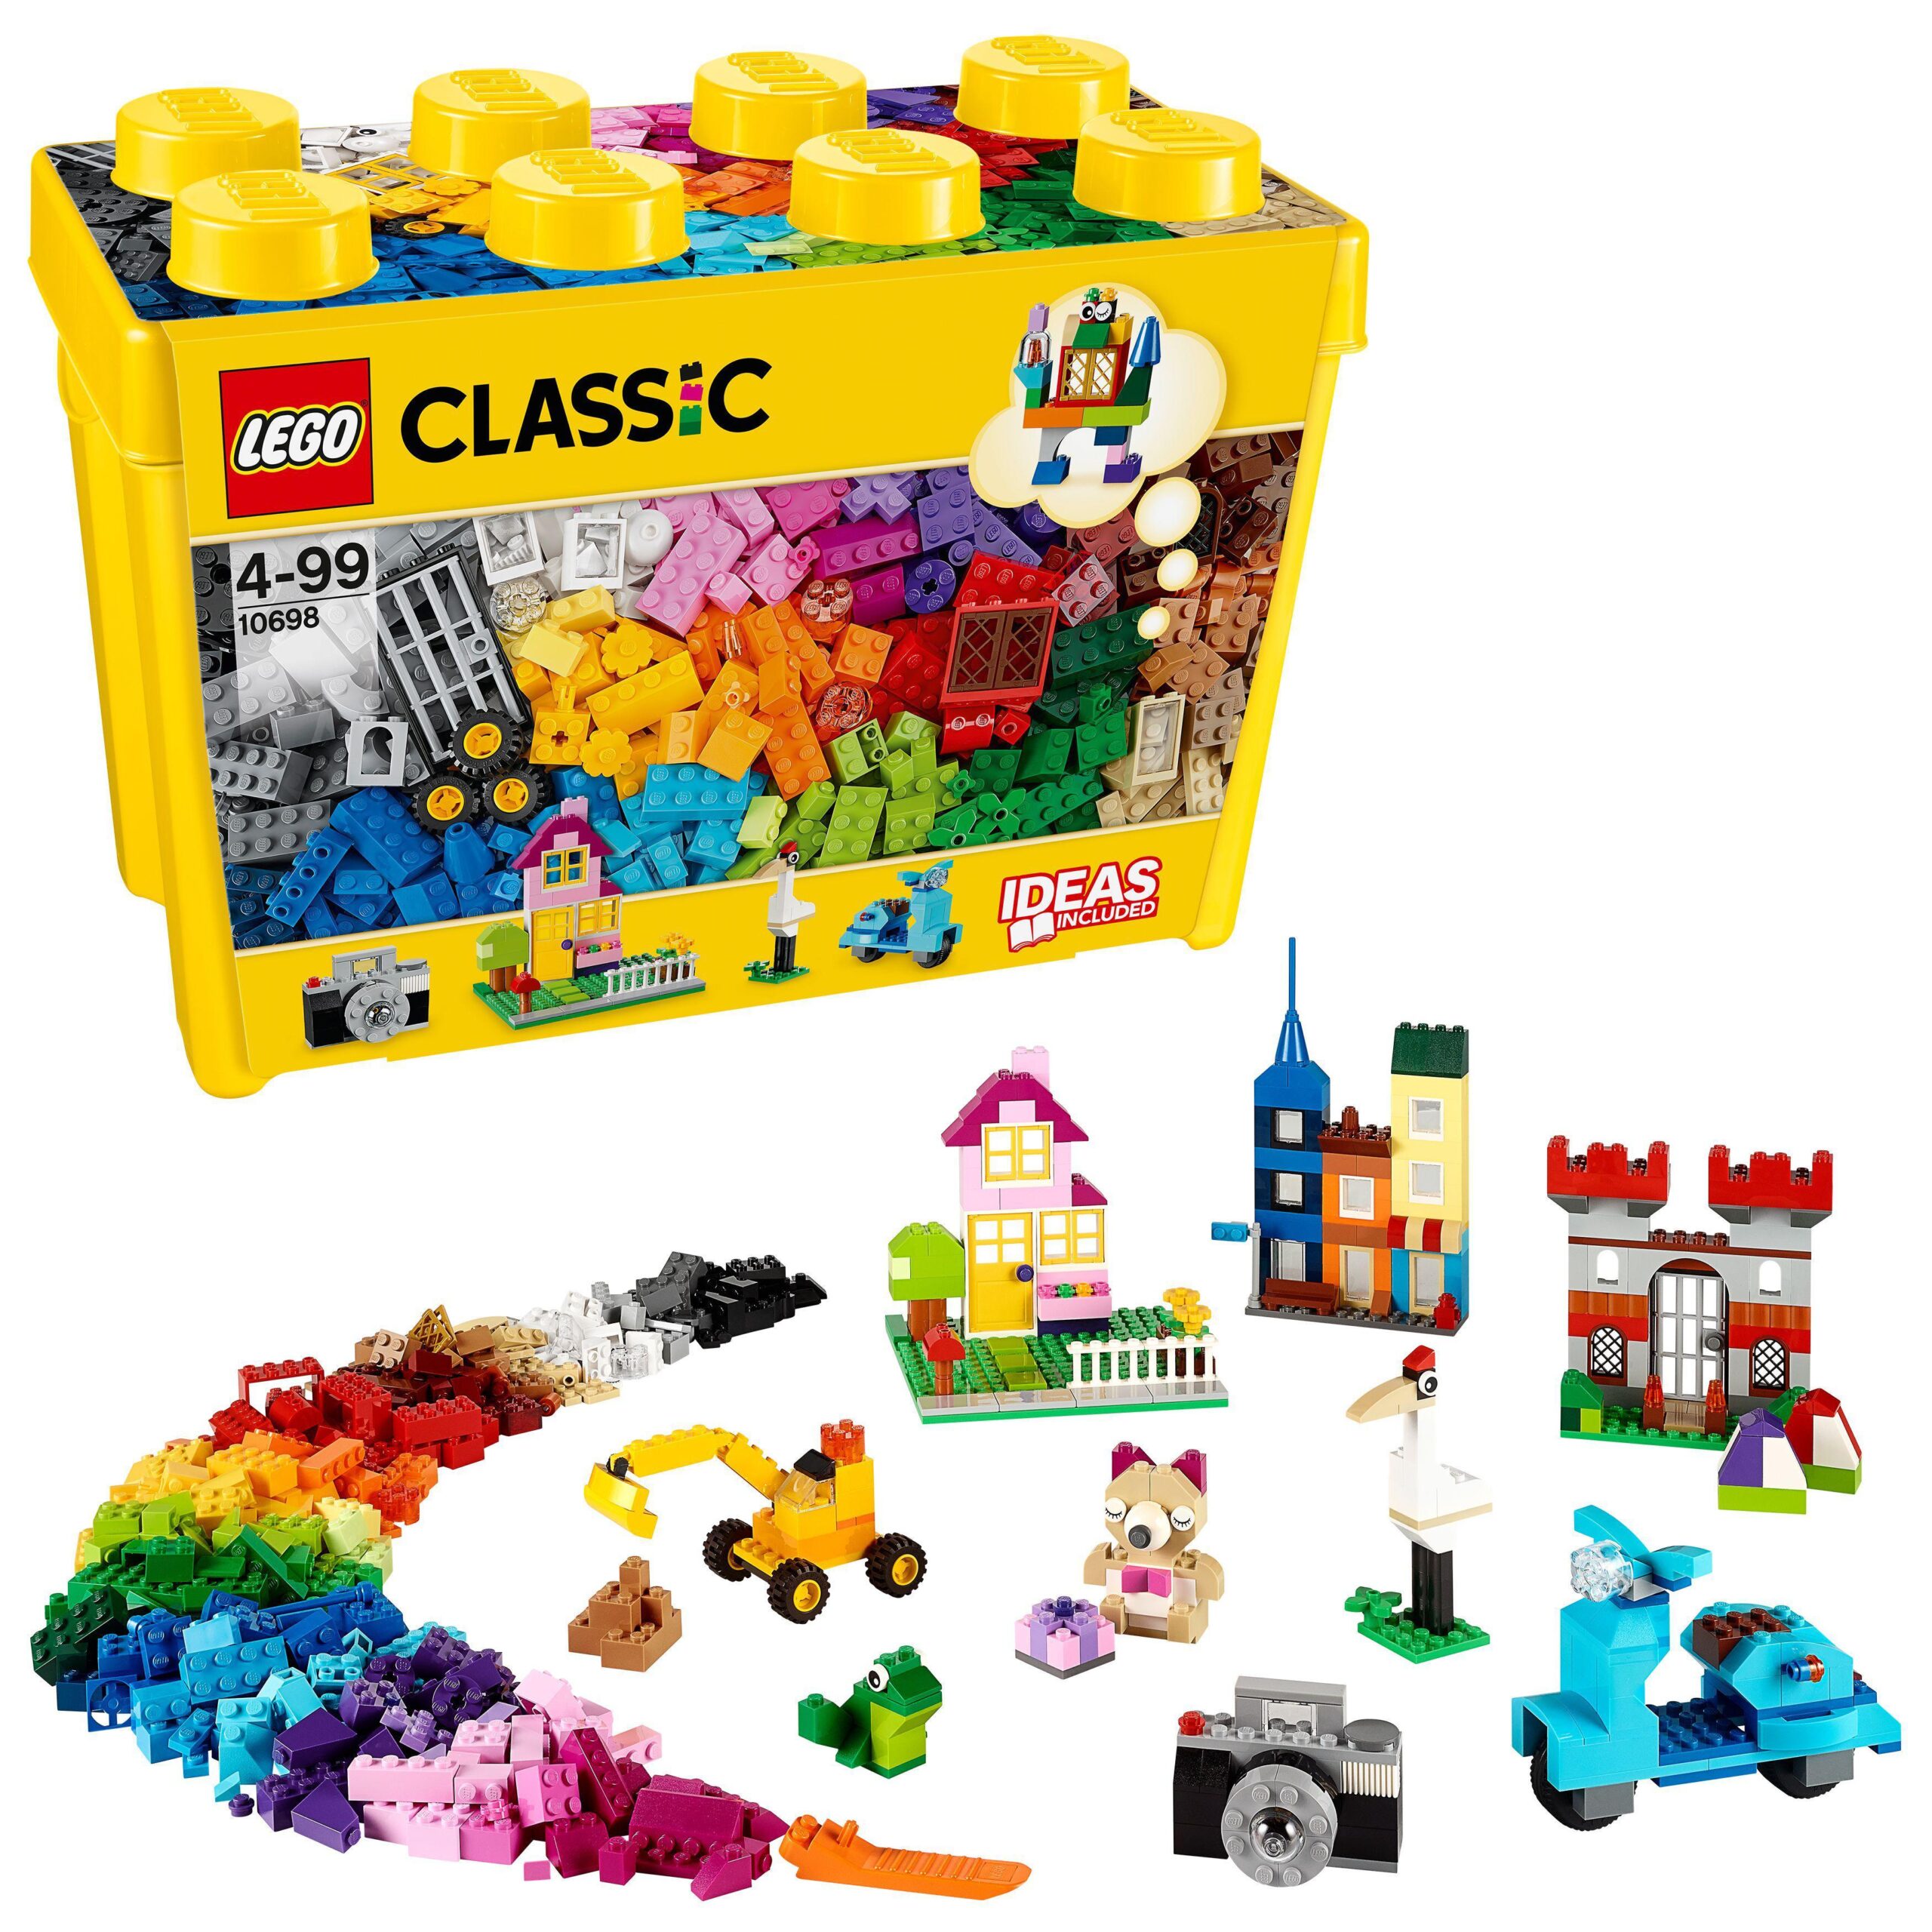 Lego classic 11017 mostri creativi, giochi educativi per bambini di 4+ anni,  giocattolo con mattoncini da costruzione - Toys Center